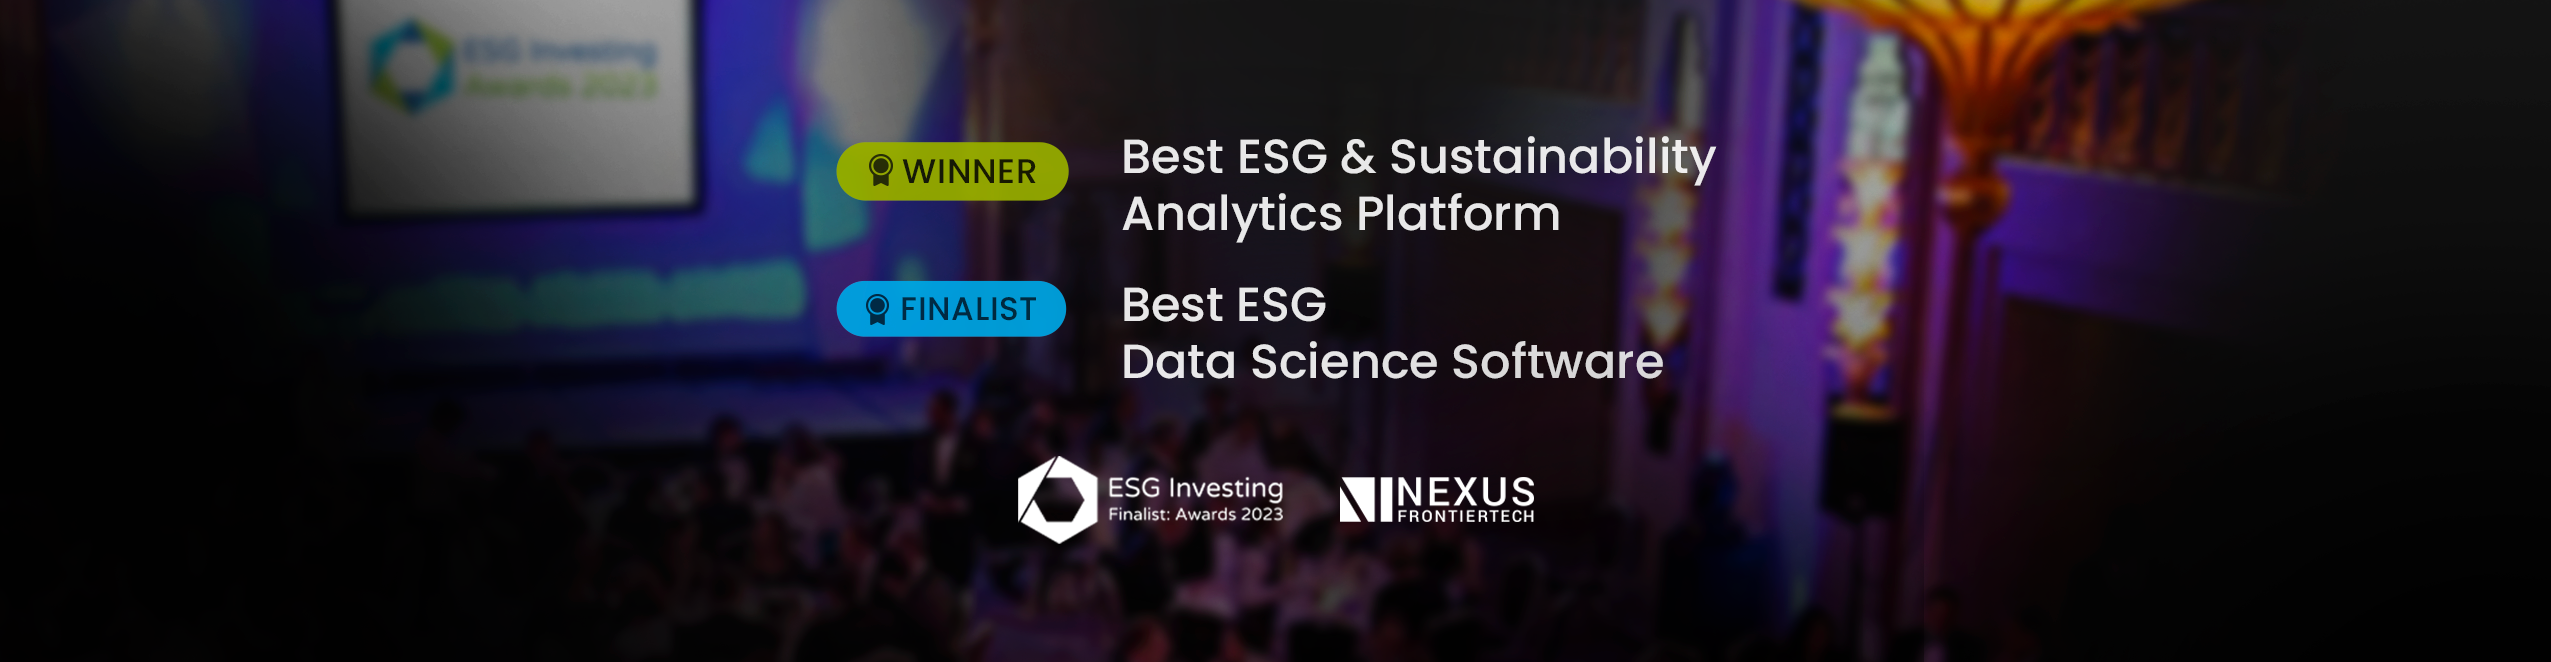 Nexus Wins Best ESG & Sustainability Analytics Platform